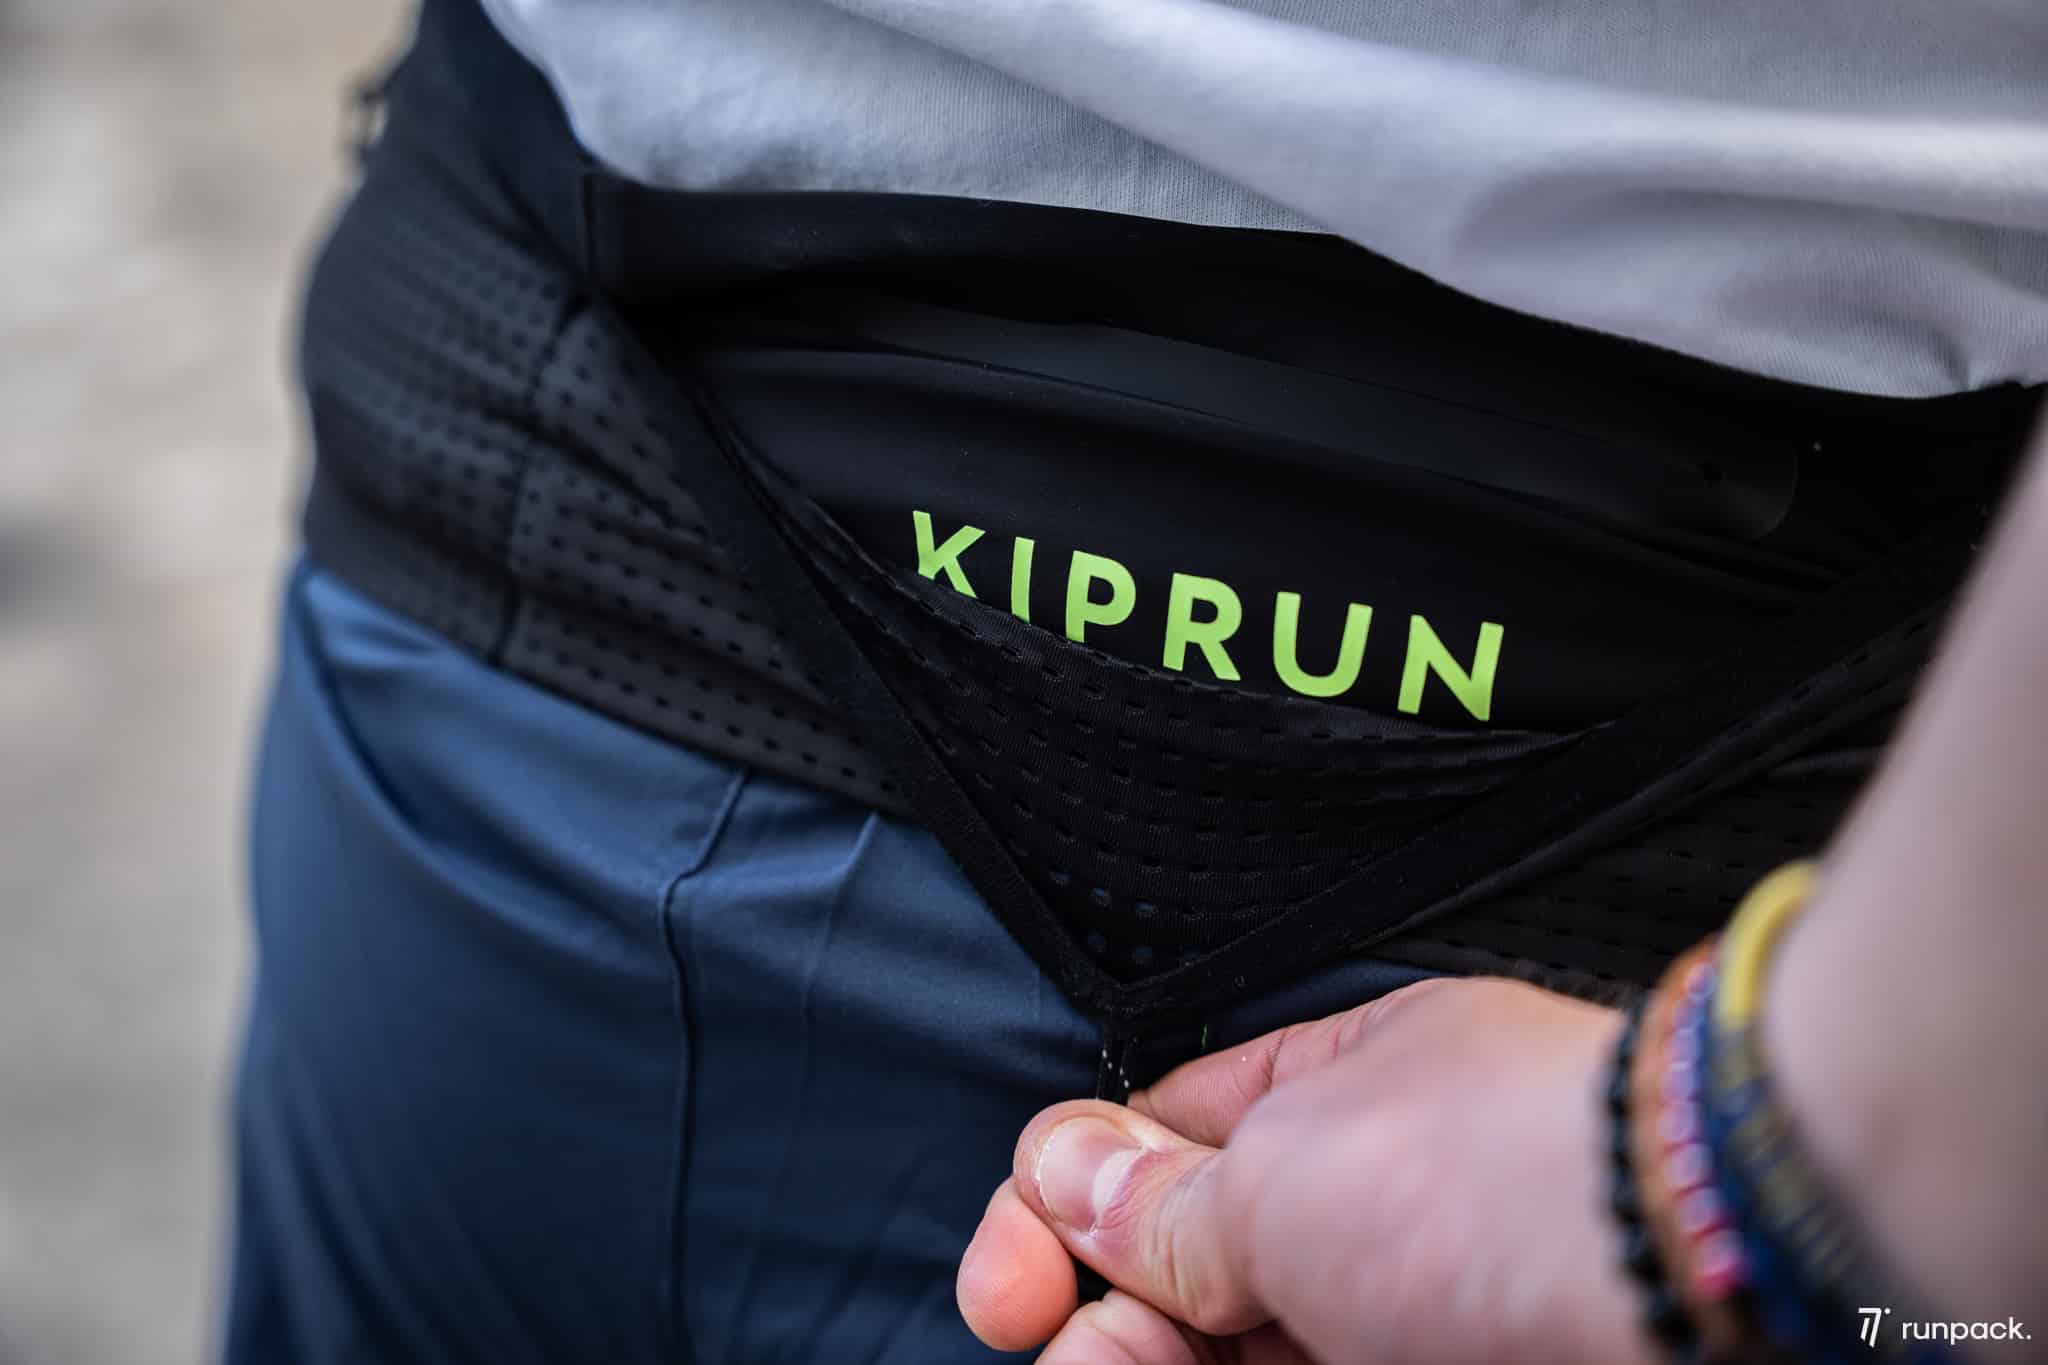 kiprun ceinture hydratation marathon belt runpack 1